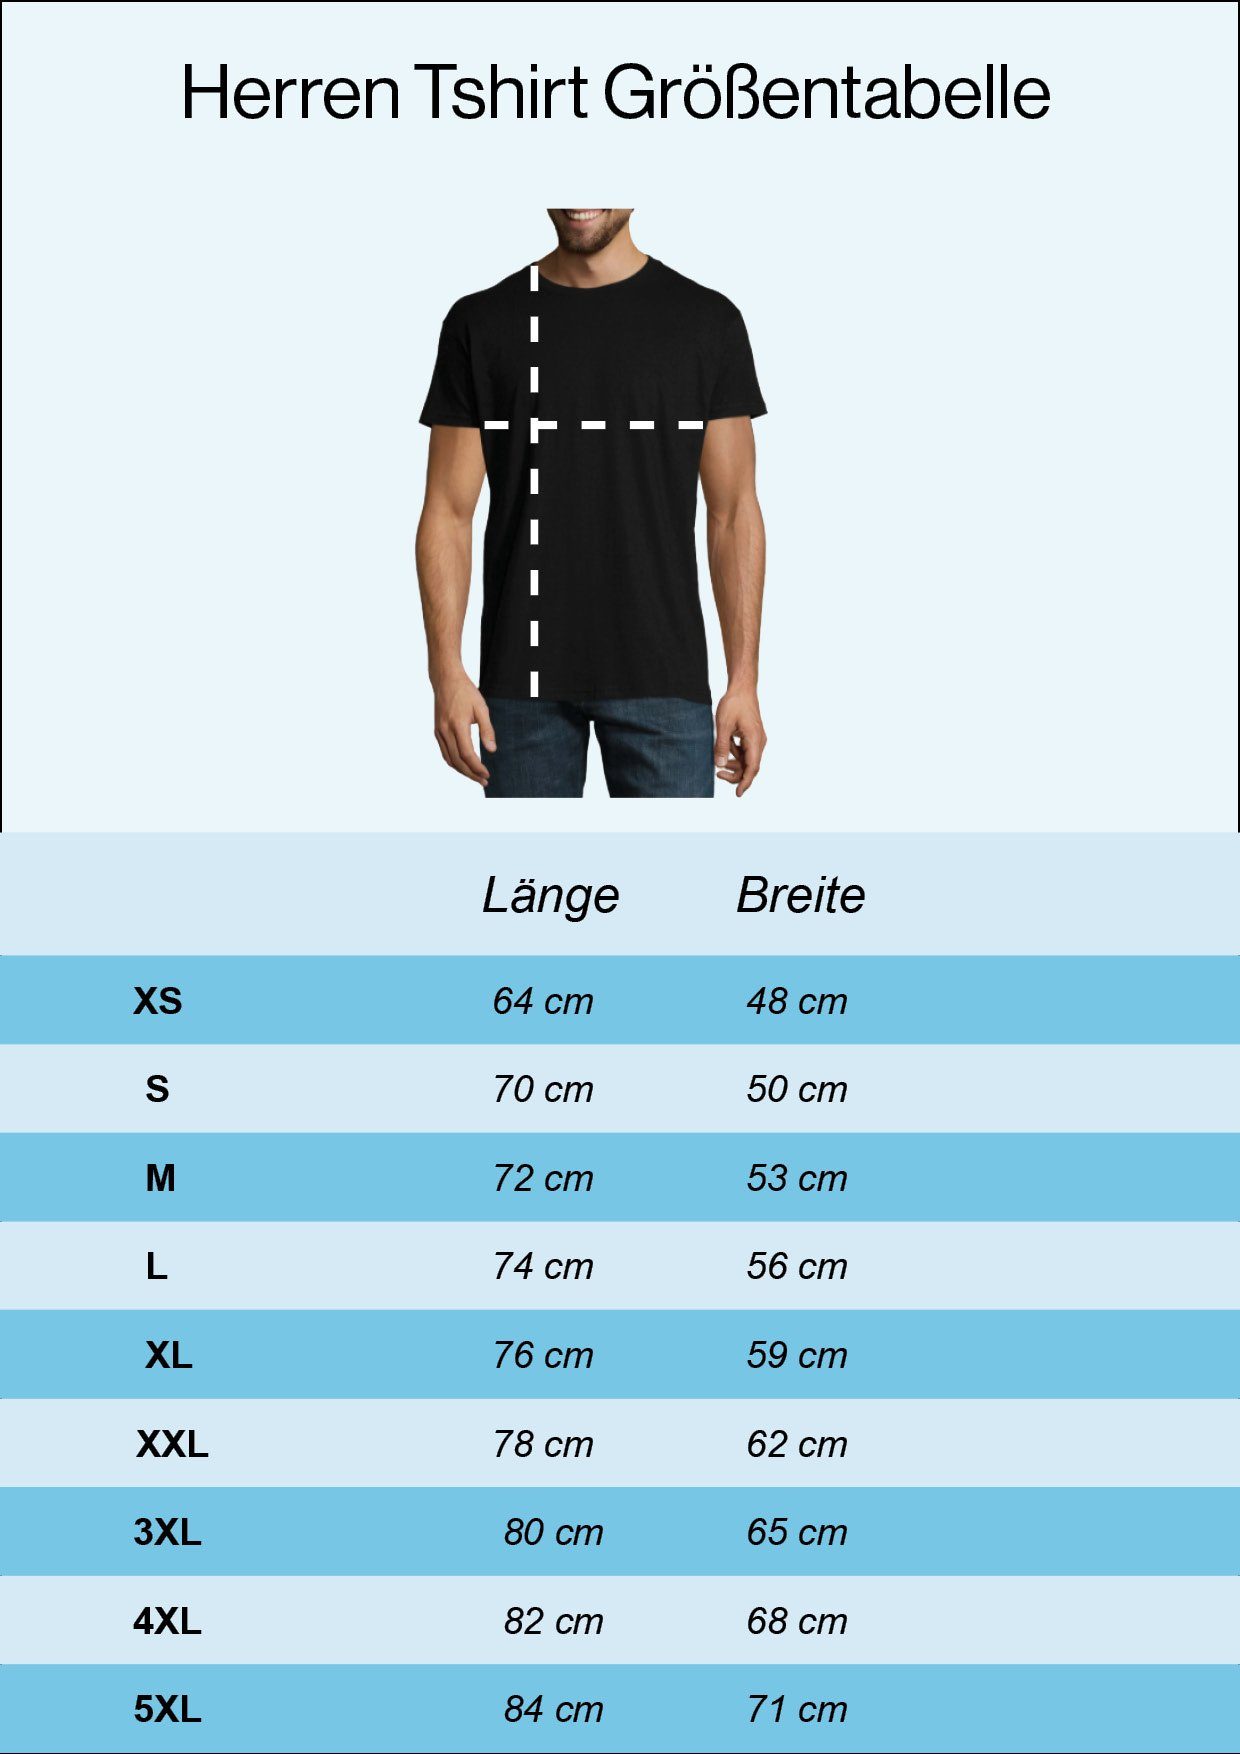 Youth Shirt Weiß Postbote T-Shirt Herren trendigem Frontprint Designz Super mit